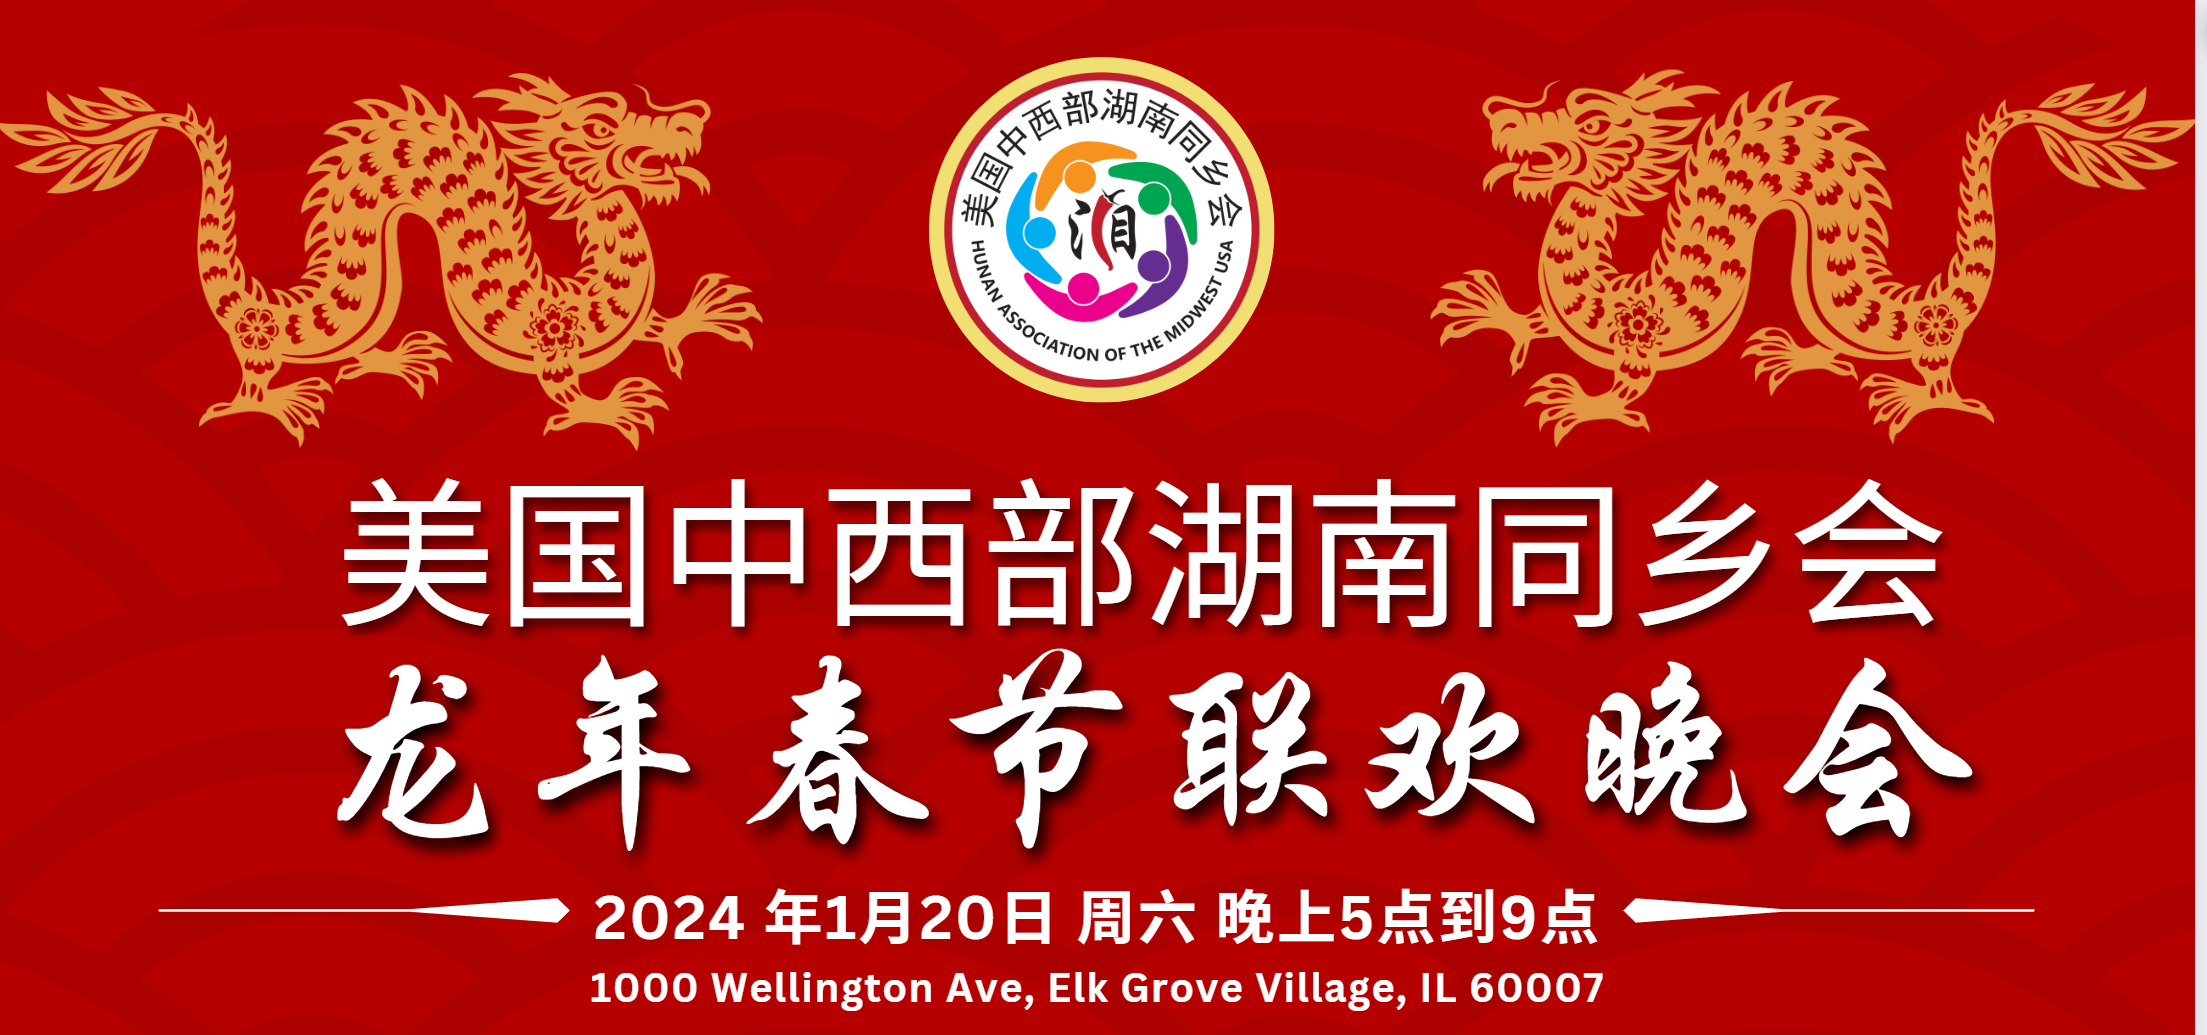 美国中西部湖南同乡会2024春节联欢晚会通知